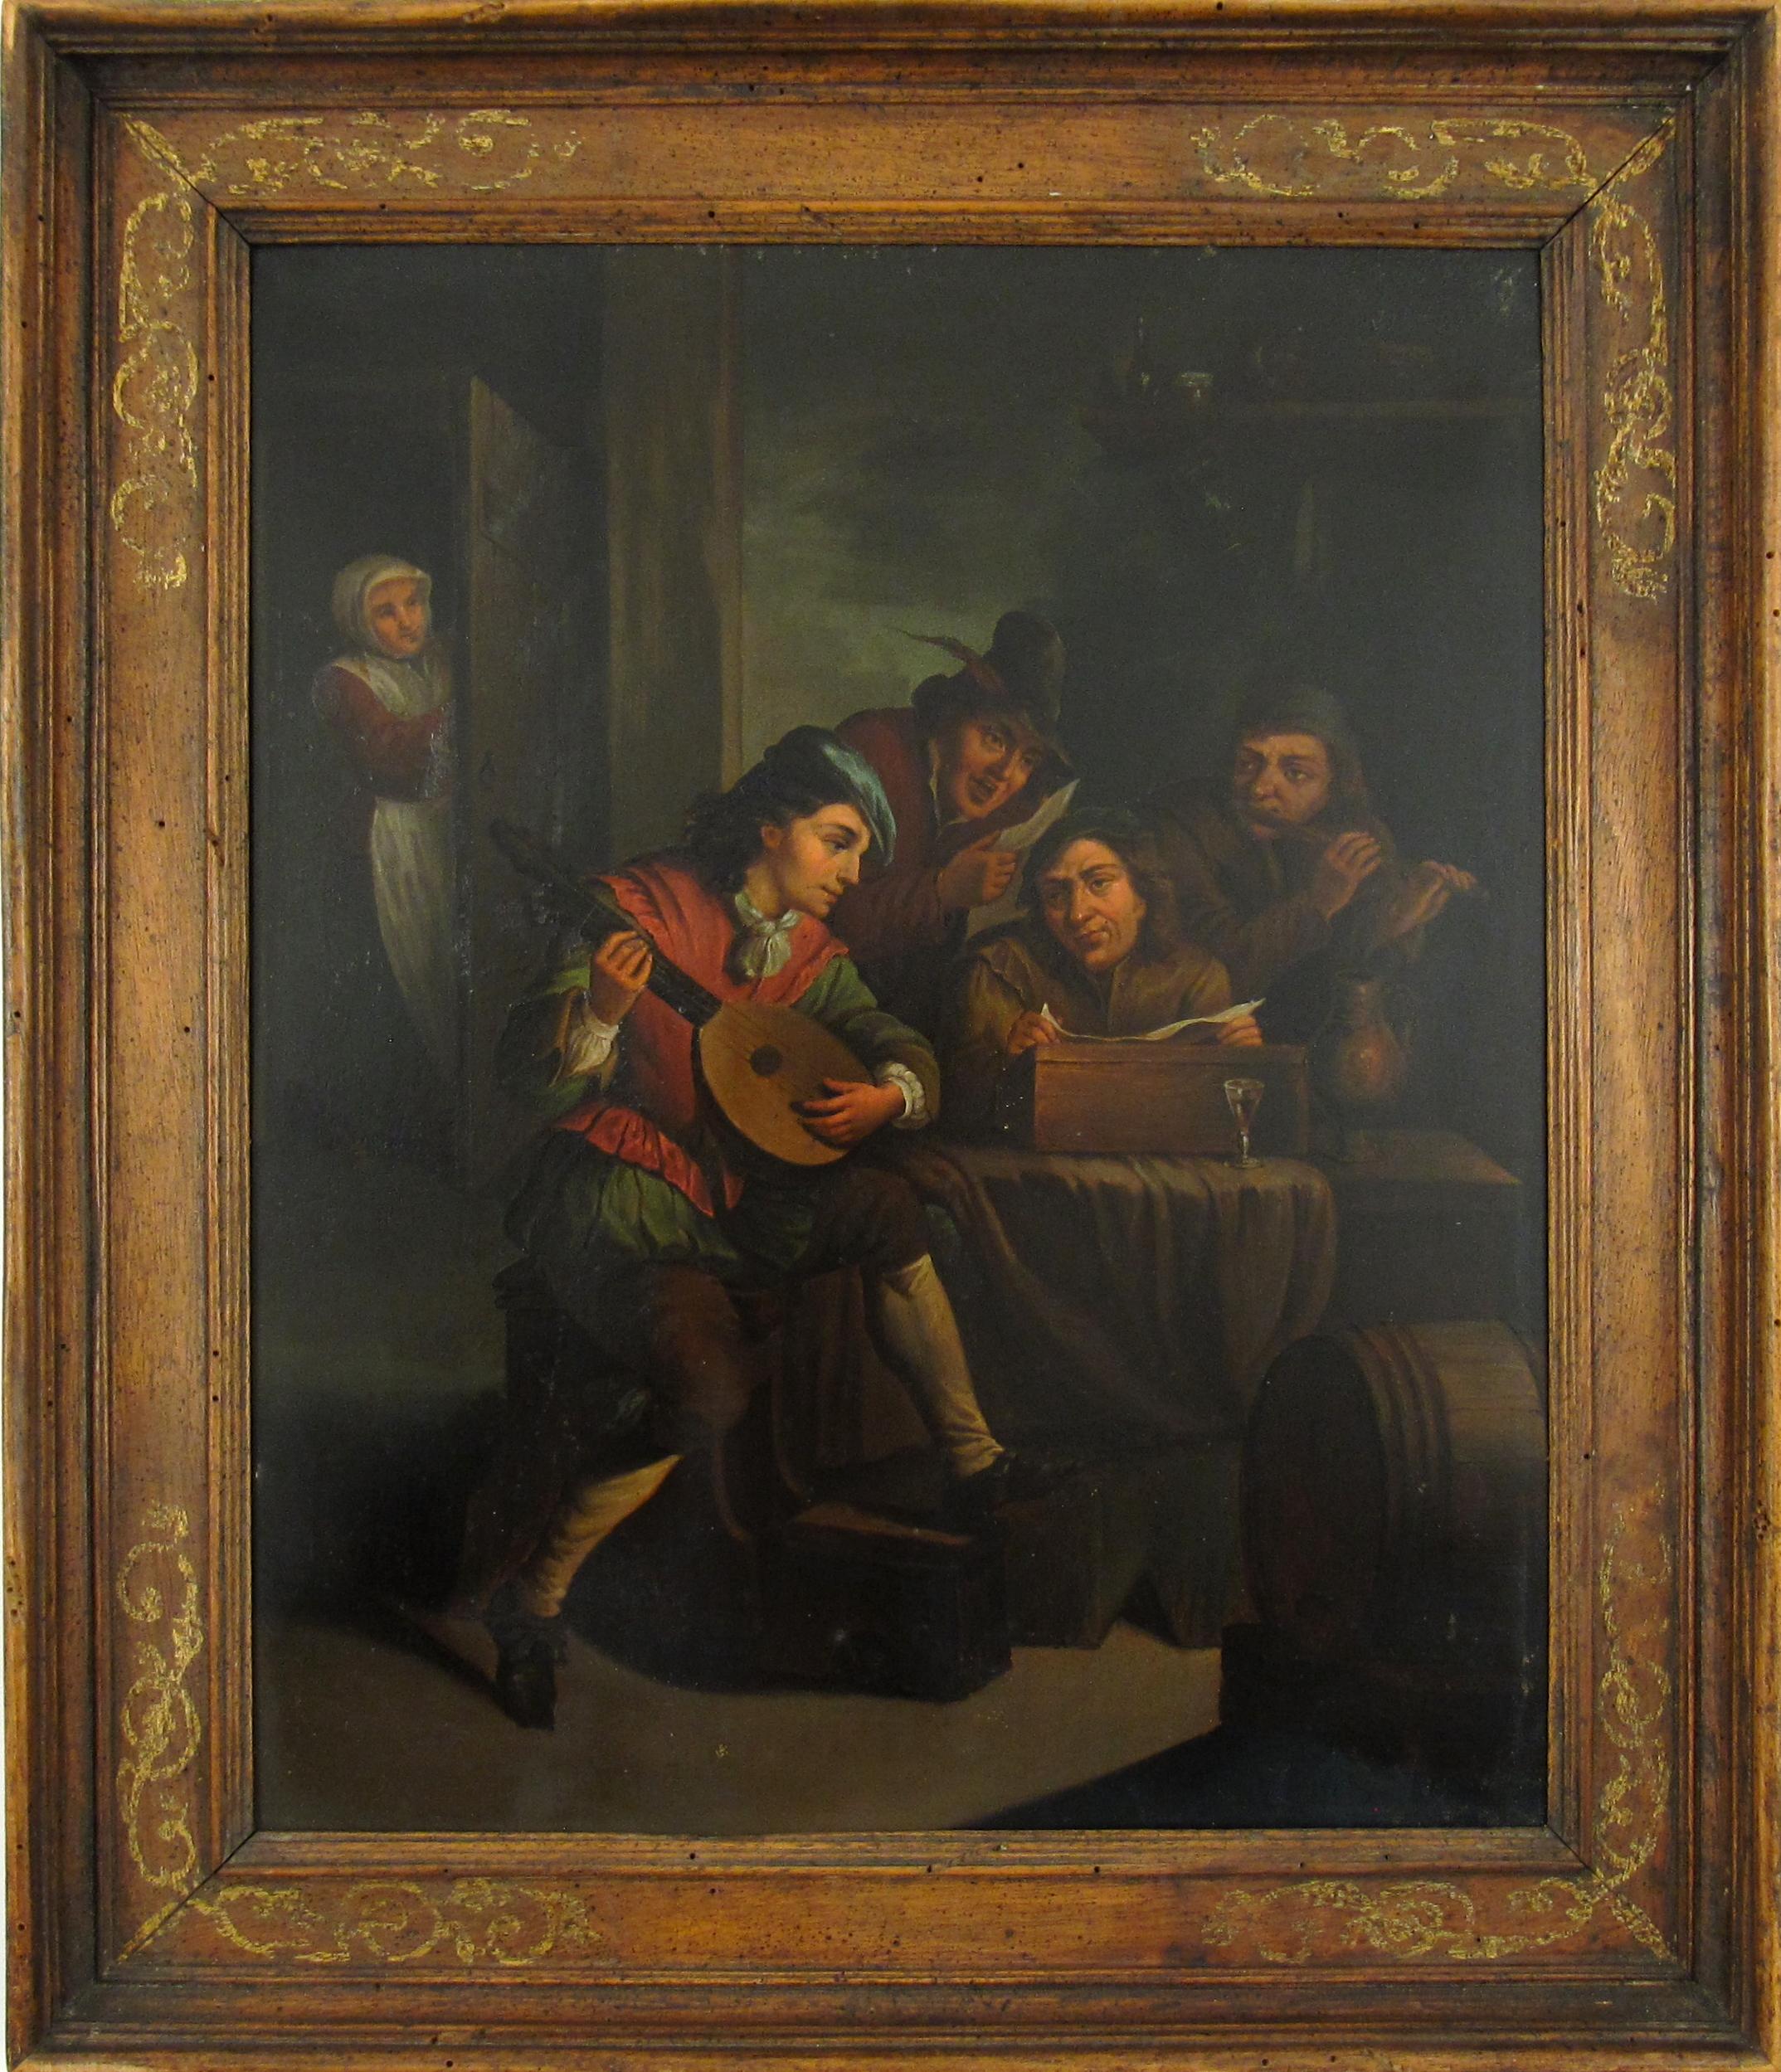 Le joueur de luth - Un intérieur flamand d'après David Teniers II - Peinture à l'huile du XVIIIe siècle